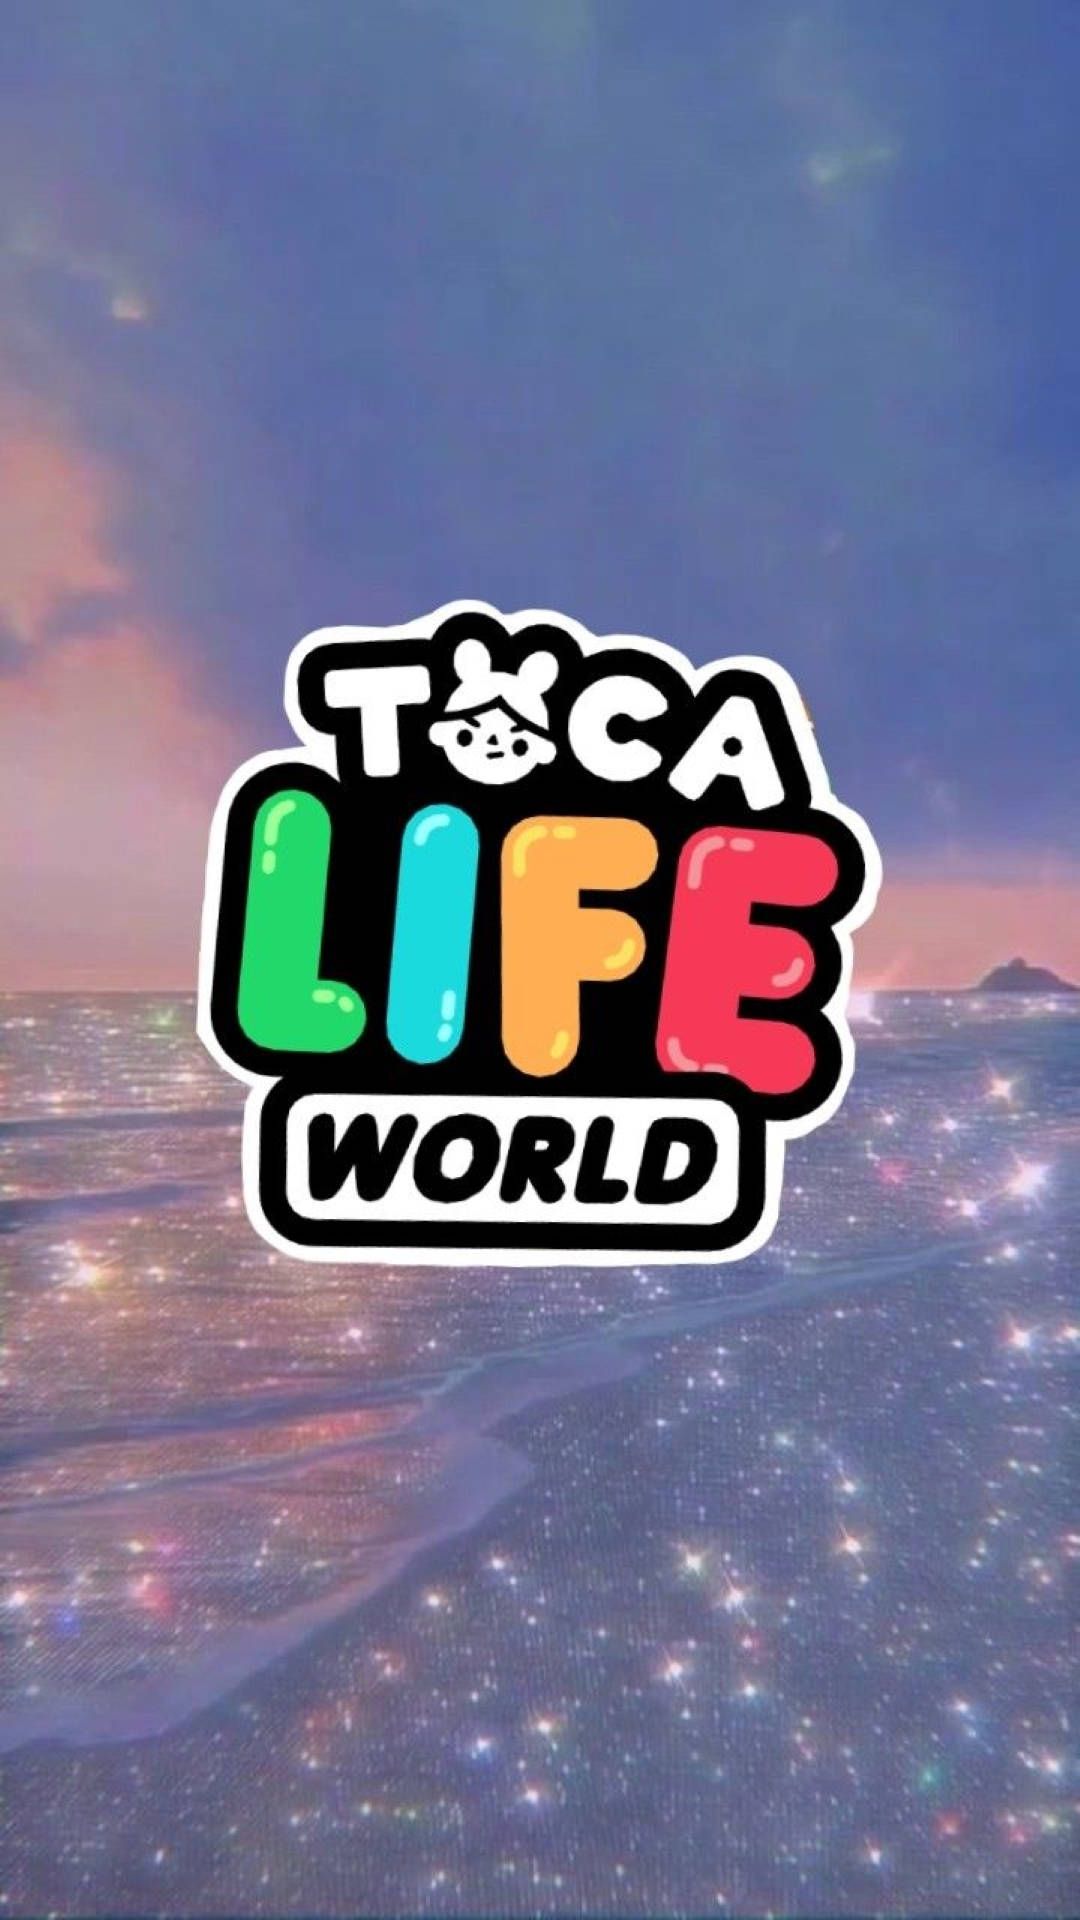 Download Toca Boca Life Logo Wallpaper